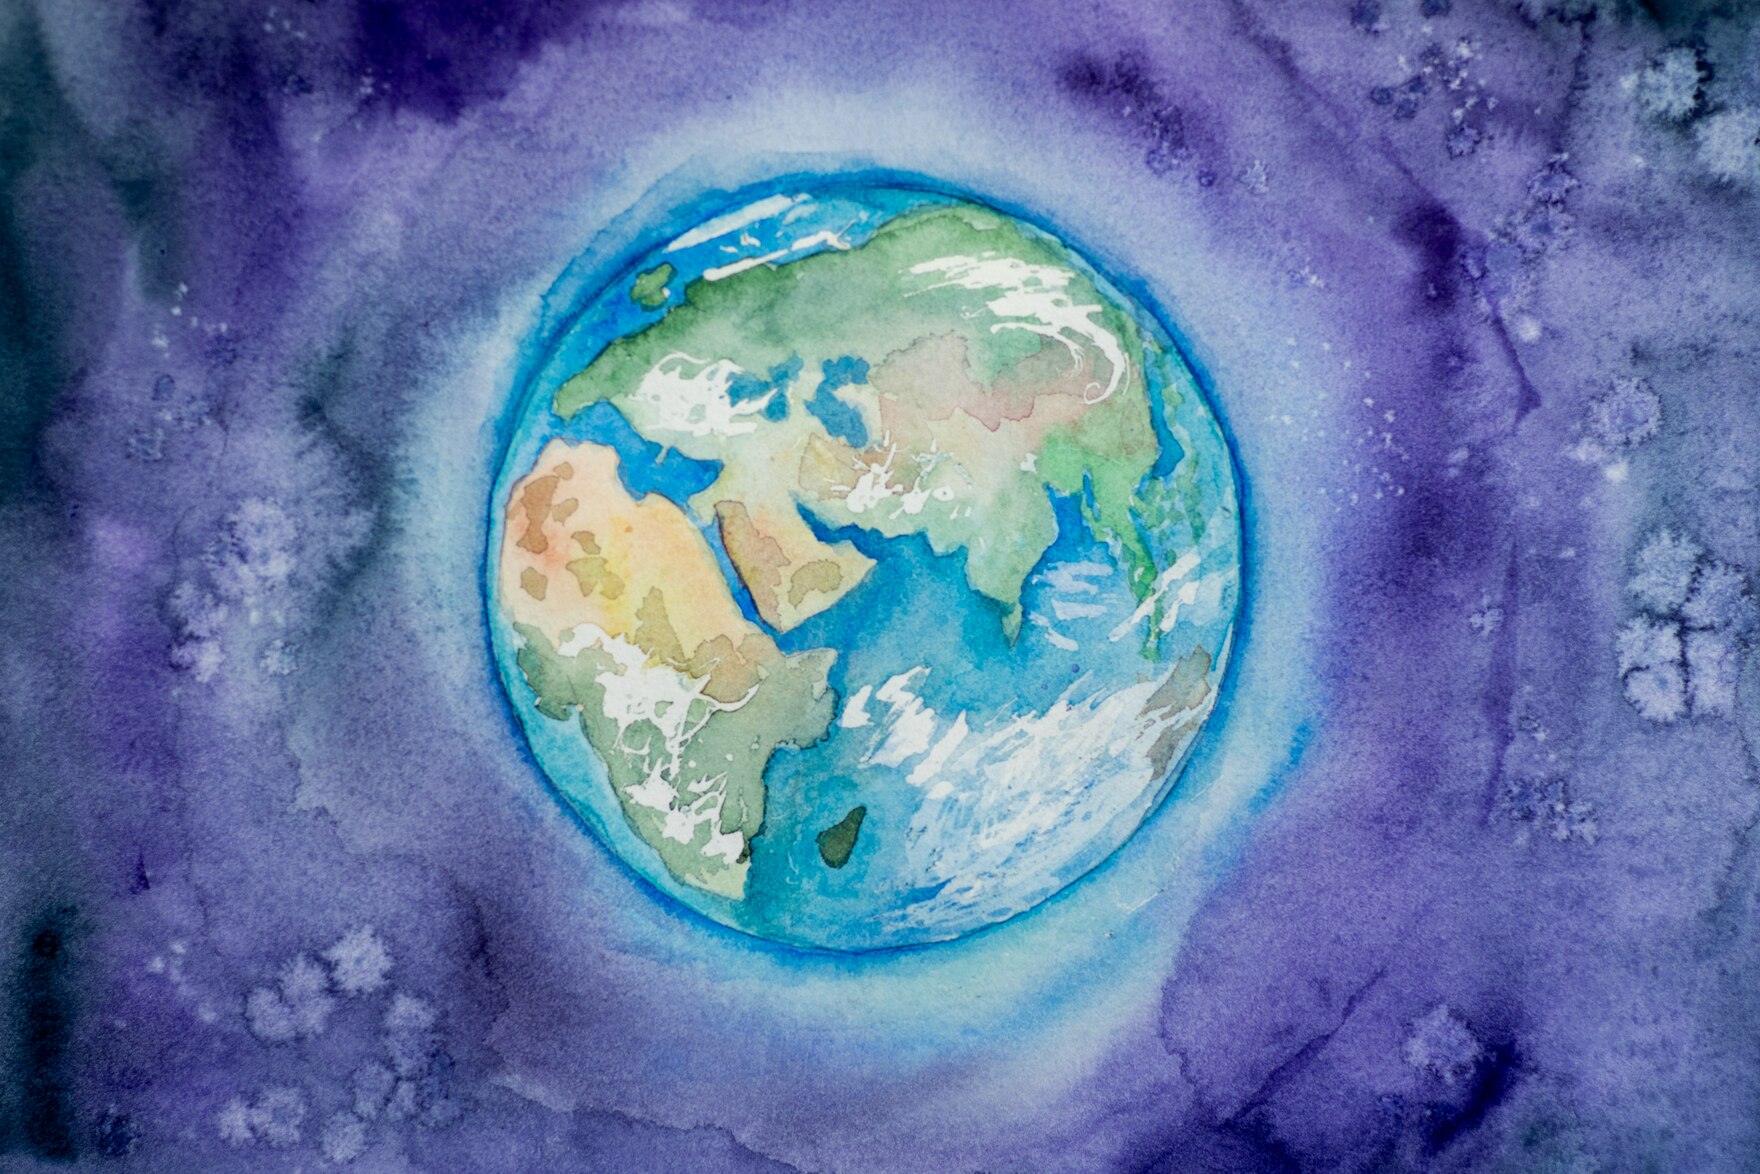 Zeichnung der Erde mit Wassermalfarben.